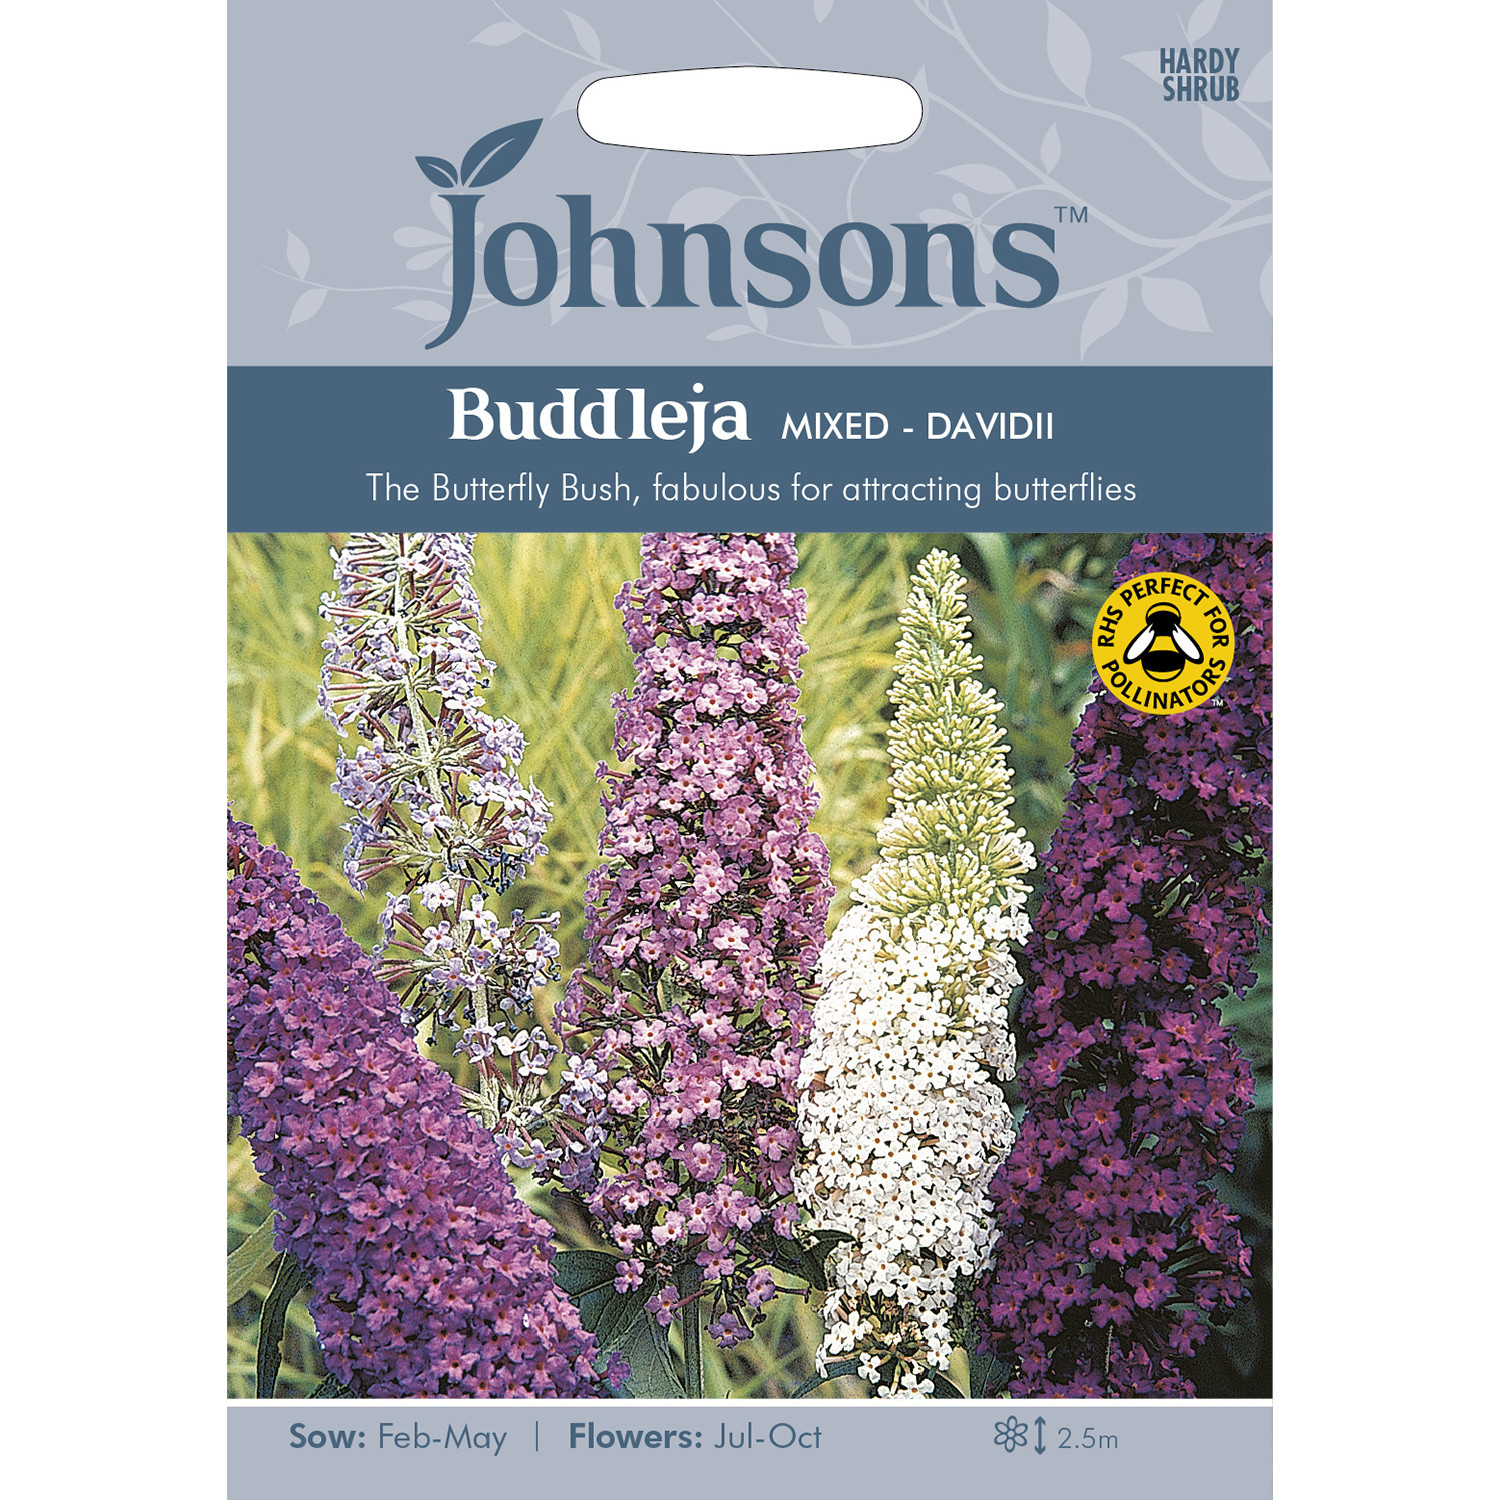 Johnsons Buddleja Mixed Flower Seeds Image 2